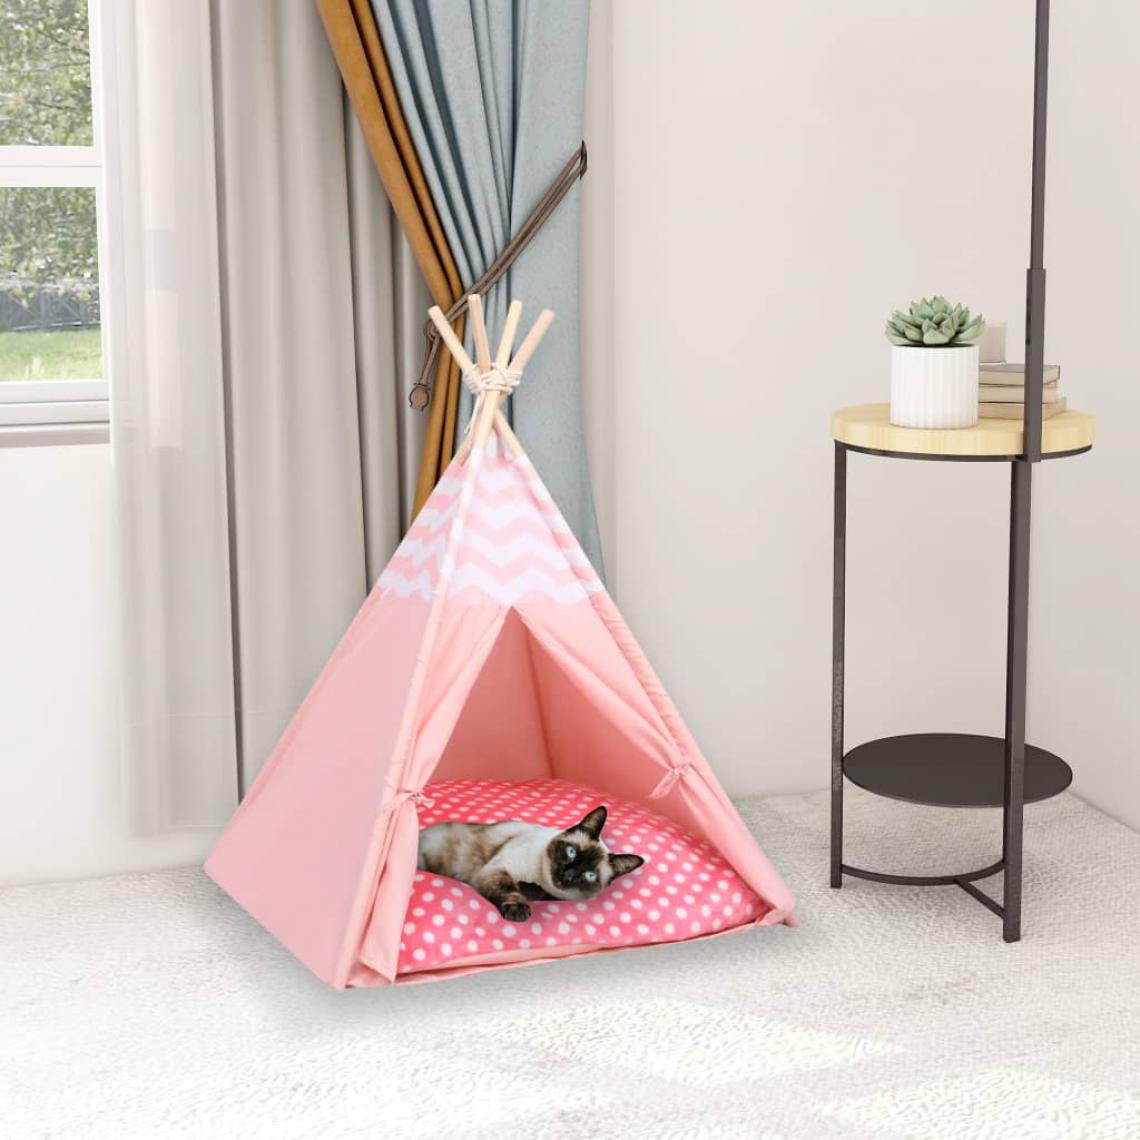 Vidaxl - vidaXL Tente pour chats avec sac Peau de pêche Rose 60x60x70 cm - Coussin pour chat